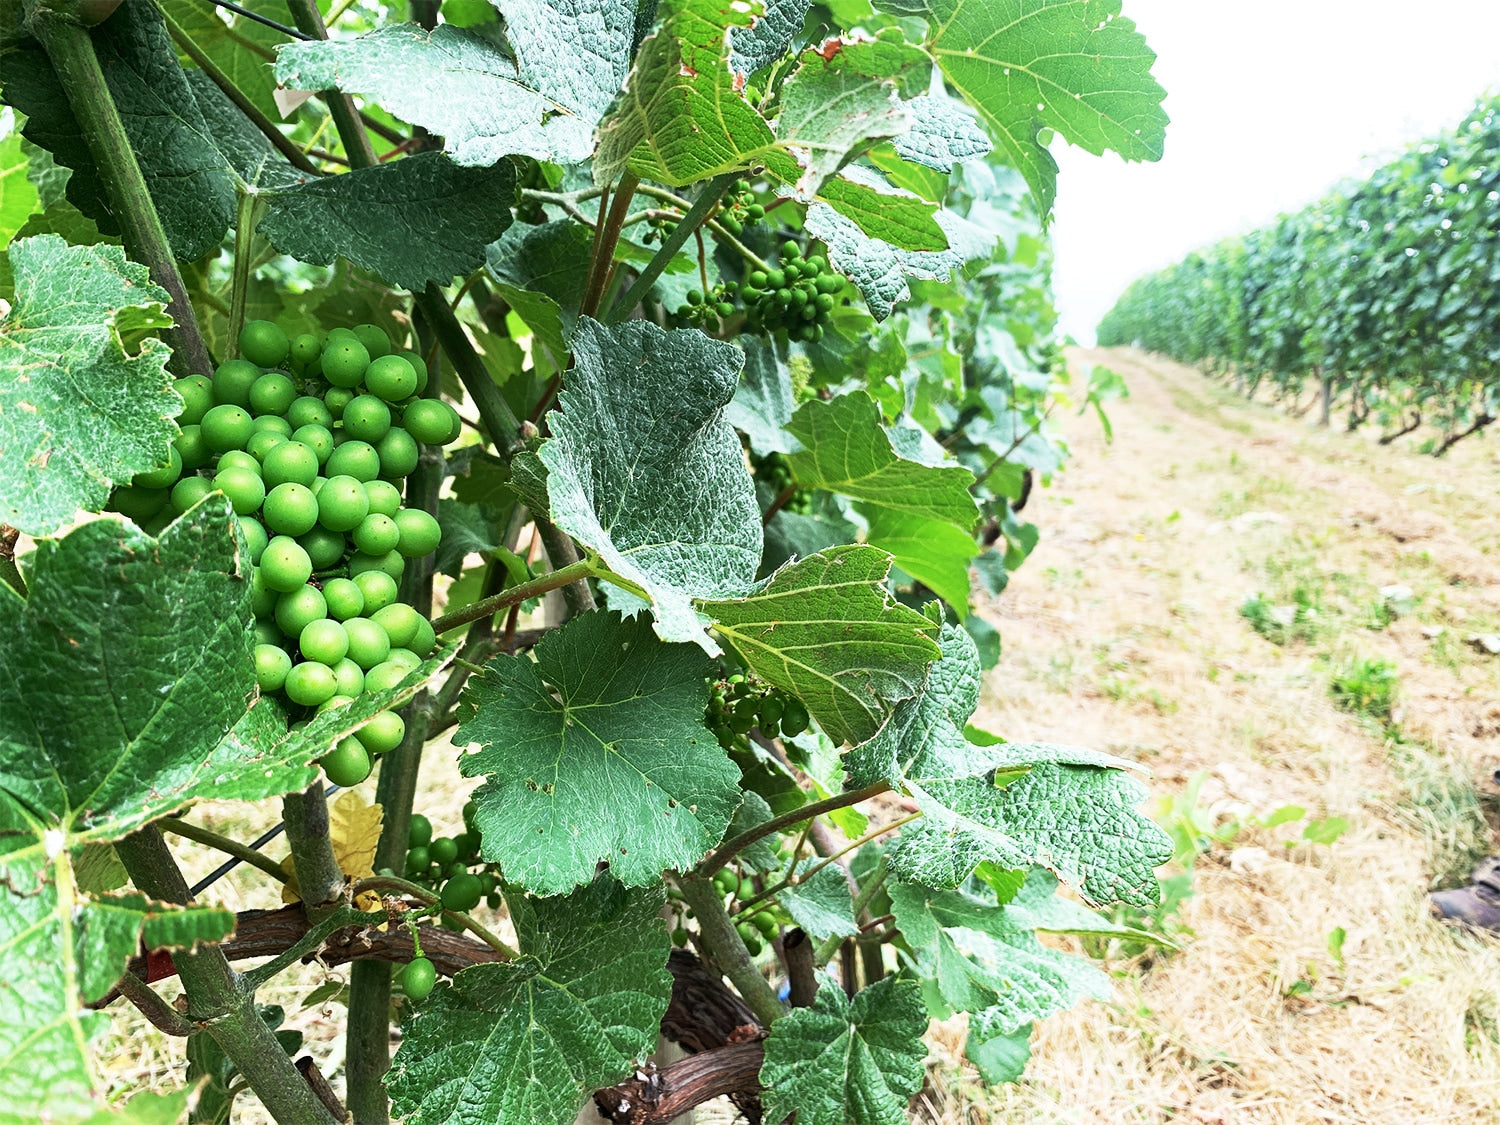 ル・レーヴ・ワイナリーの最重要品種 ムニエ。2020年はムニエとピノ・ノワールをアッサンブラージュした赤ワインにも挑戦されています。